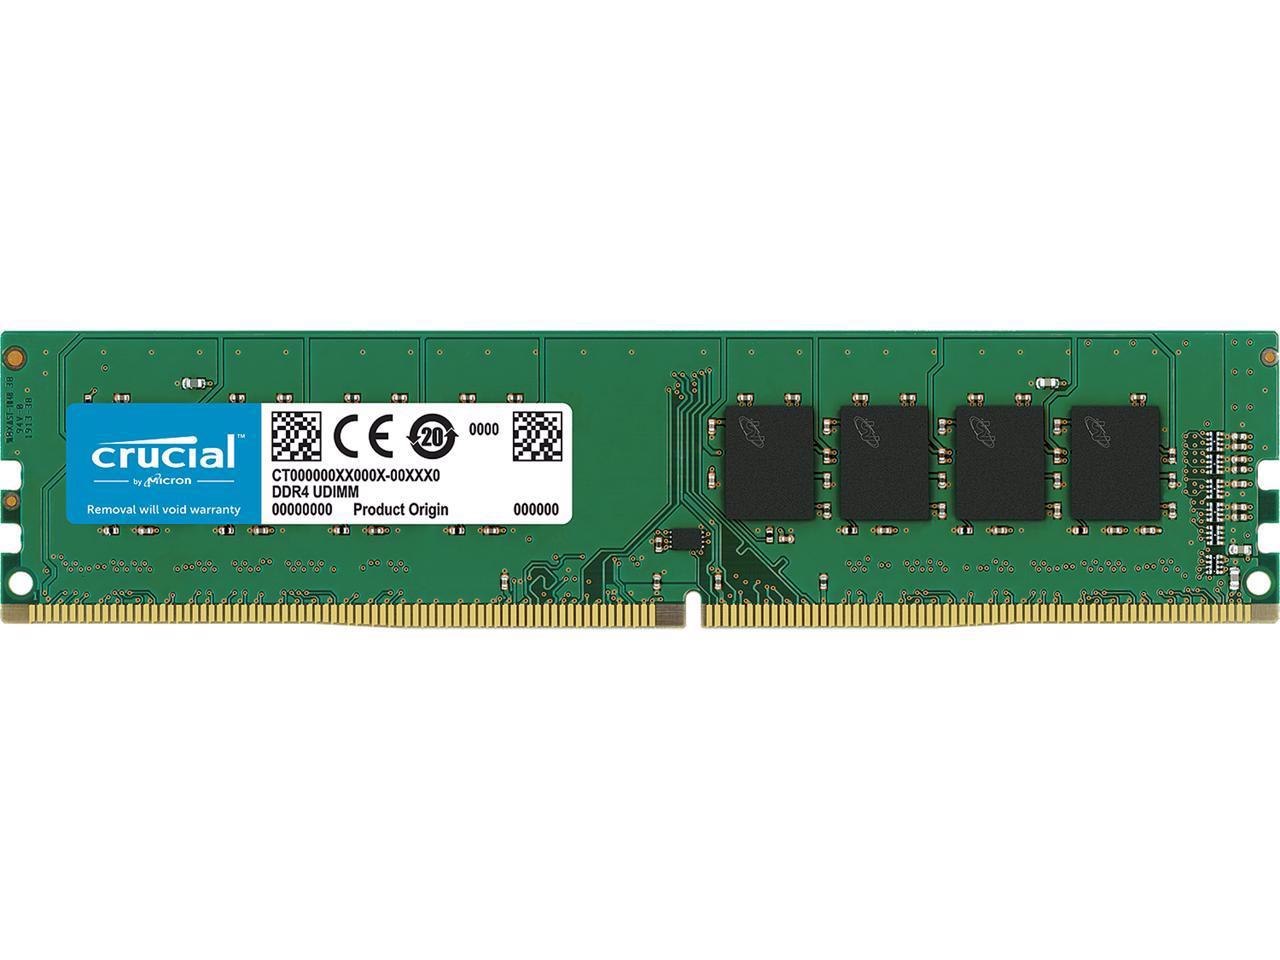 Crucial 8GB DDR4 2400 PC4 19200 CL17